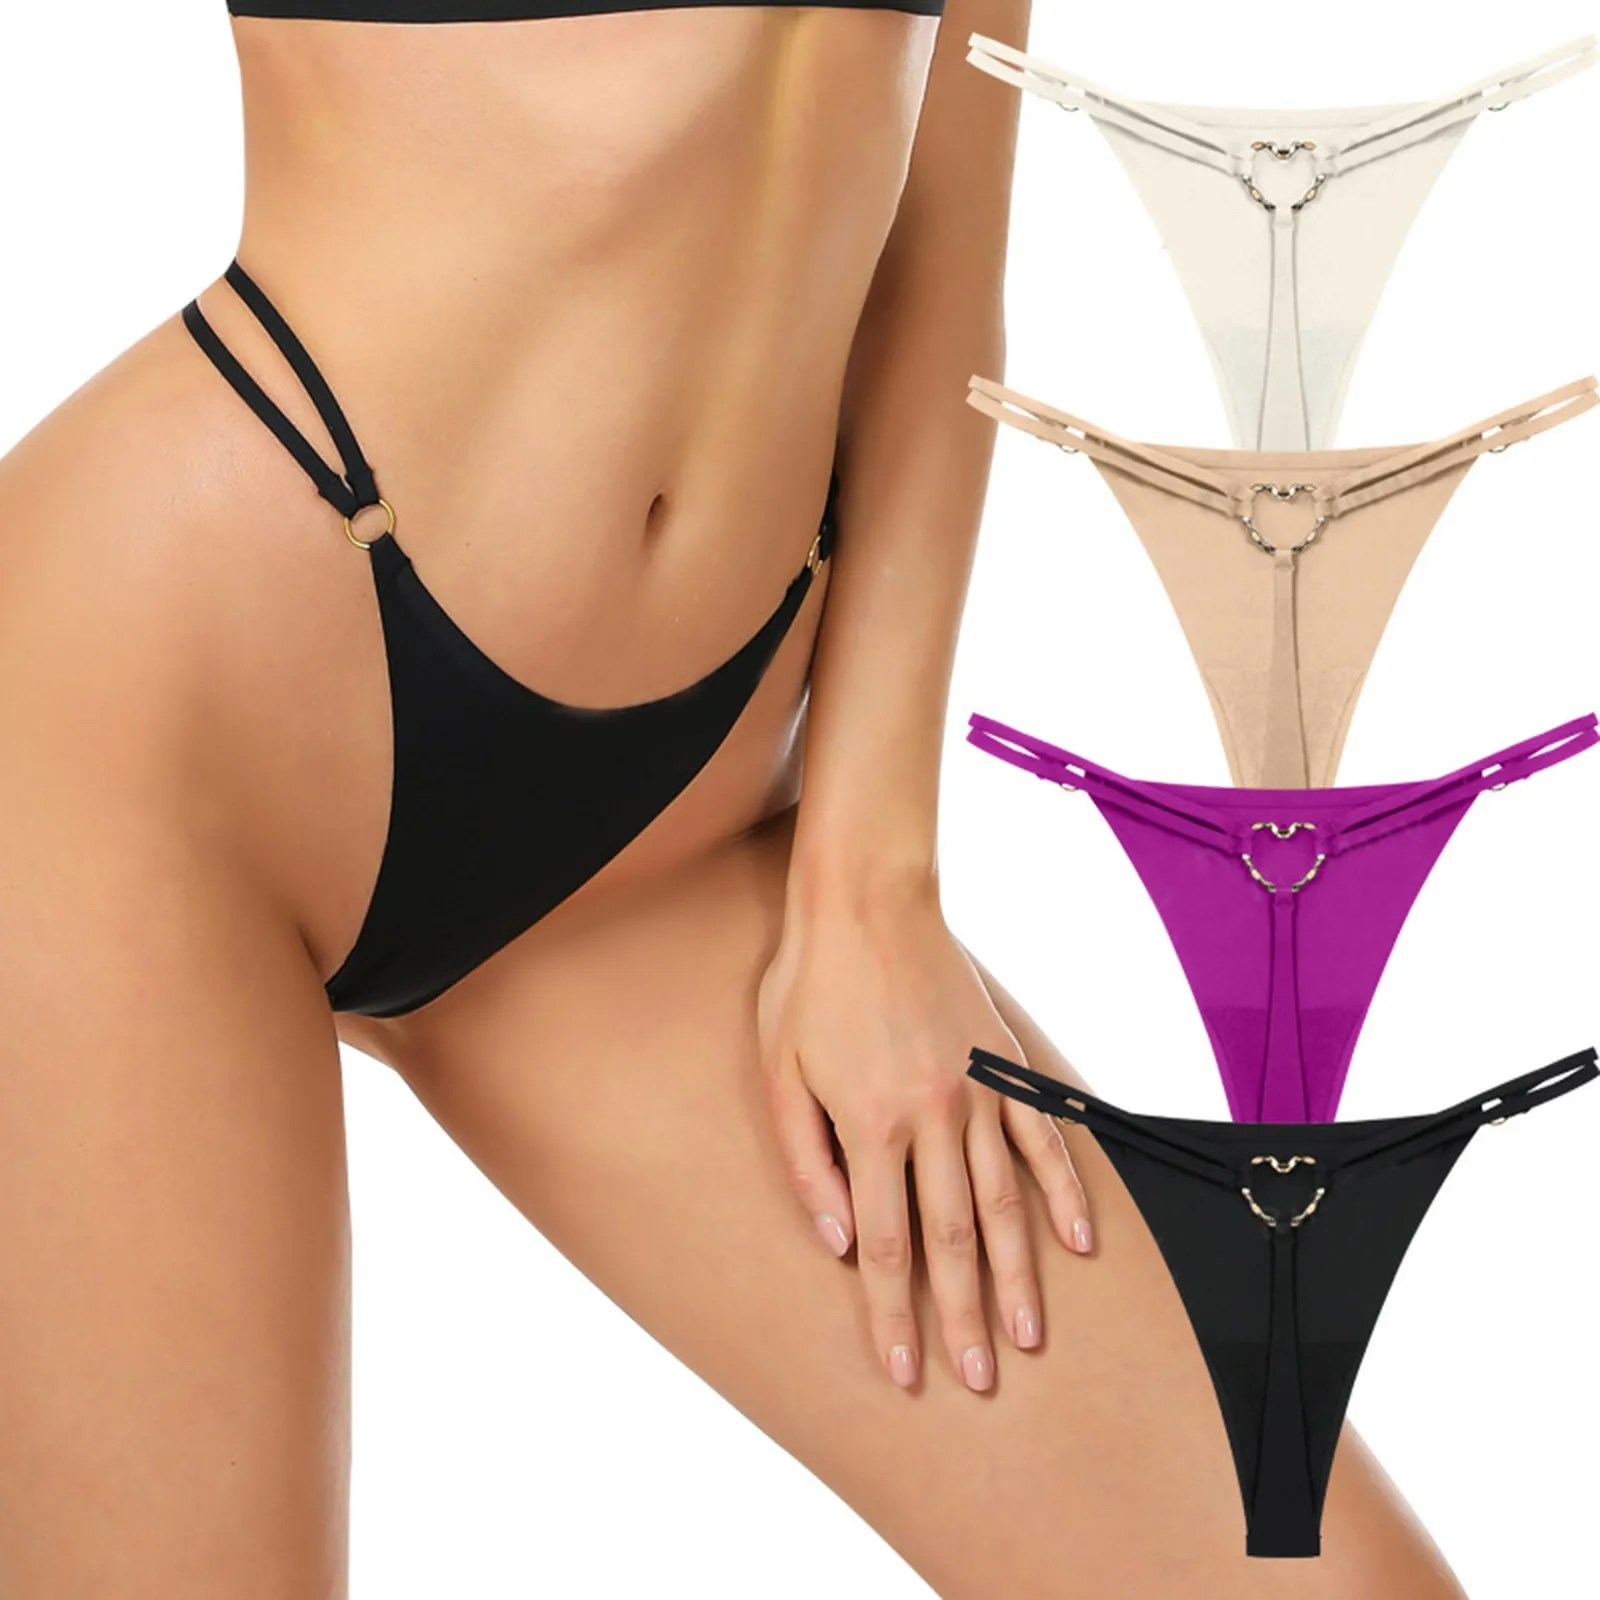  Purple - Women's Panties / Women's Lingerie & Underwear